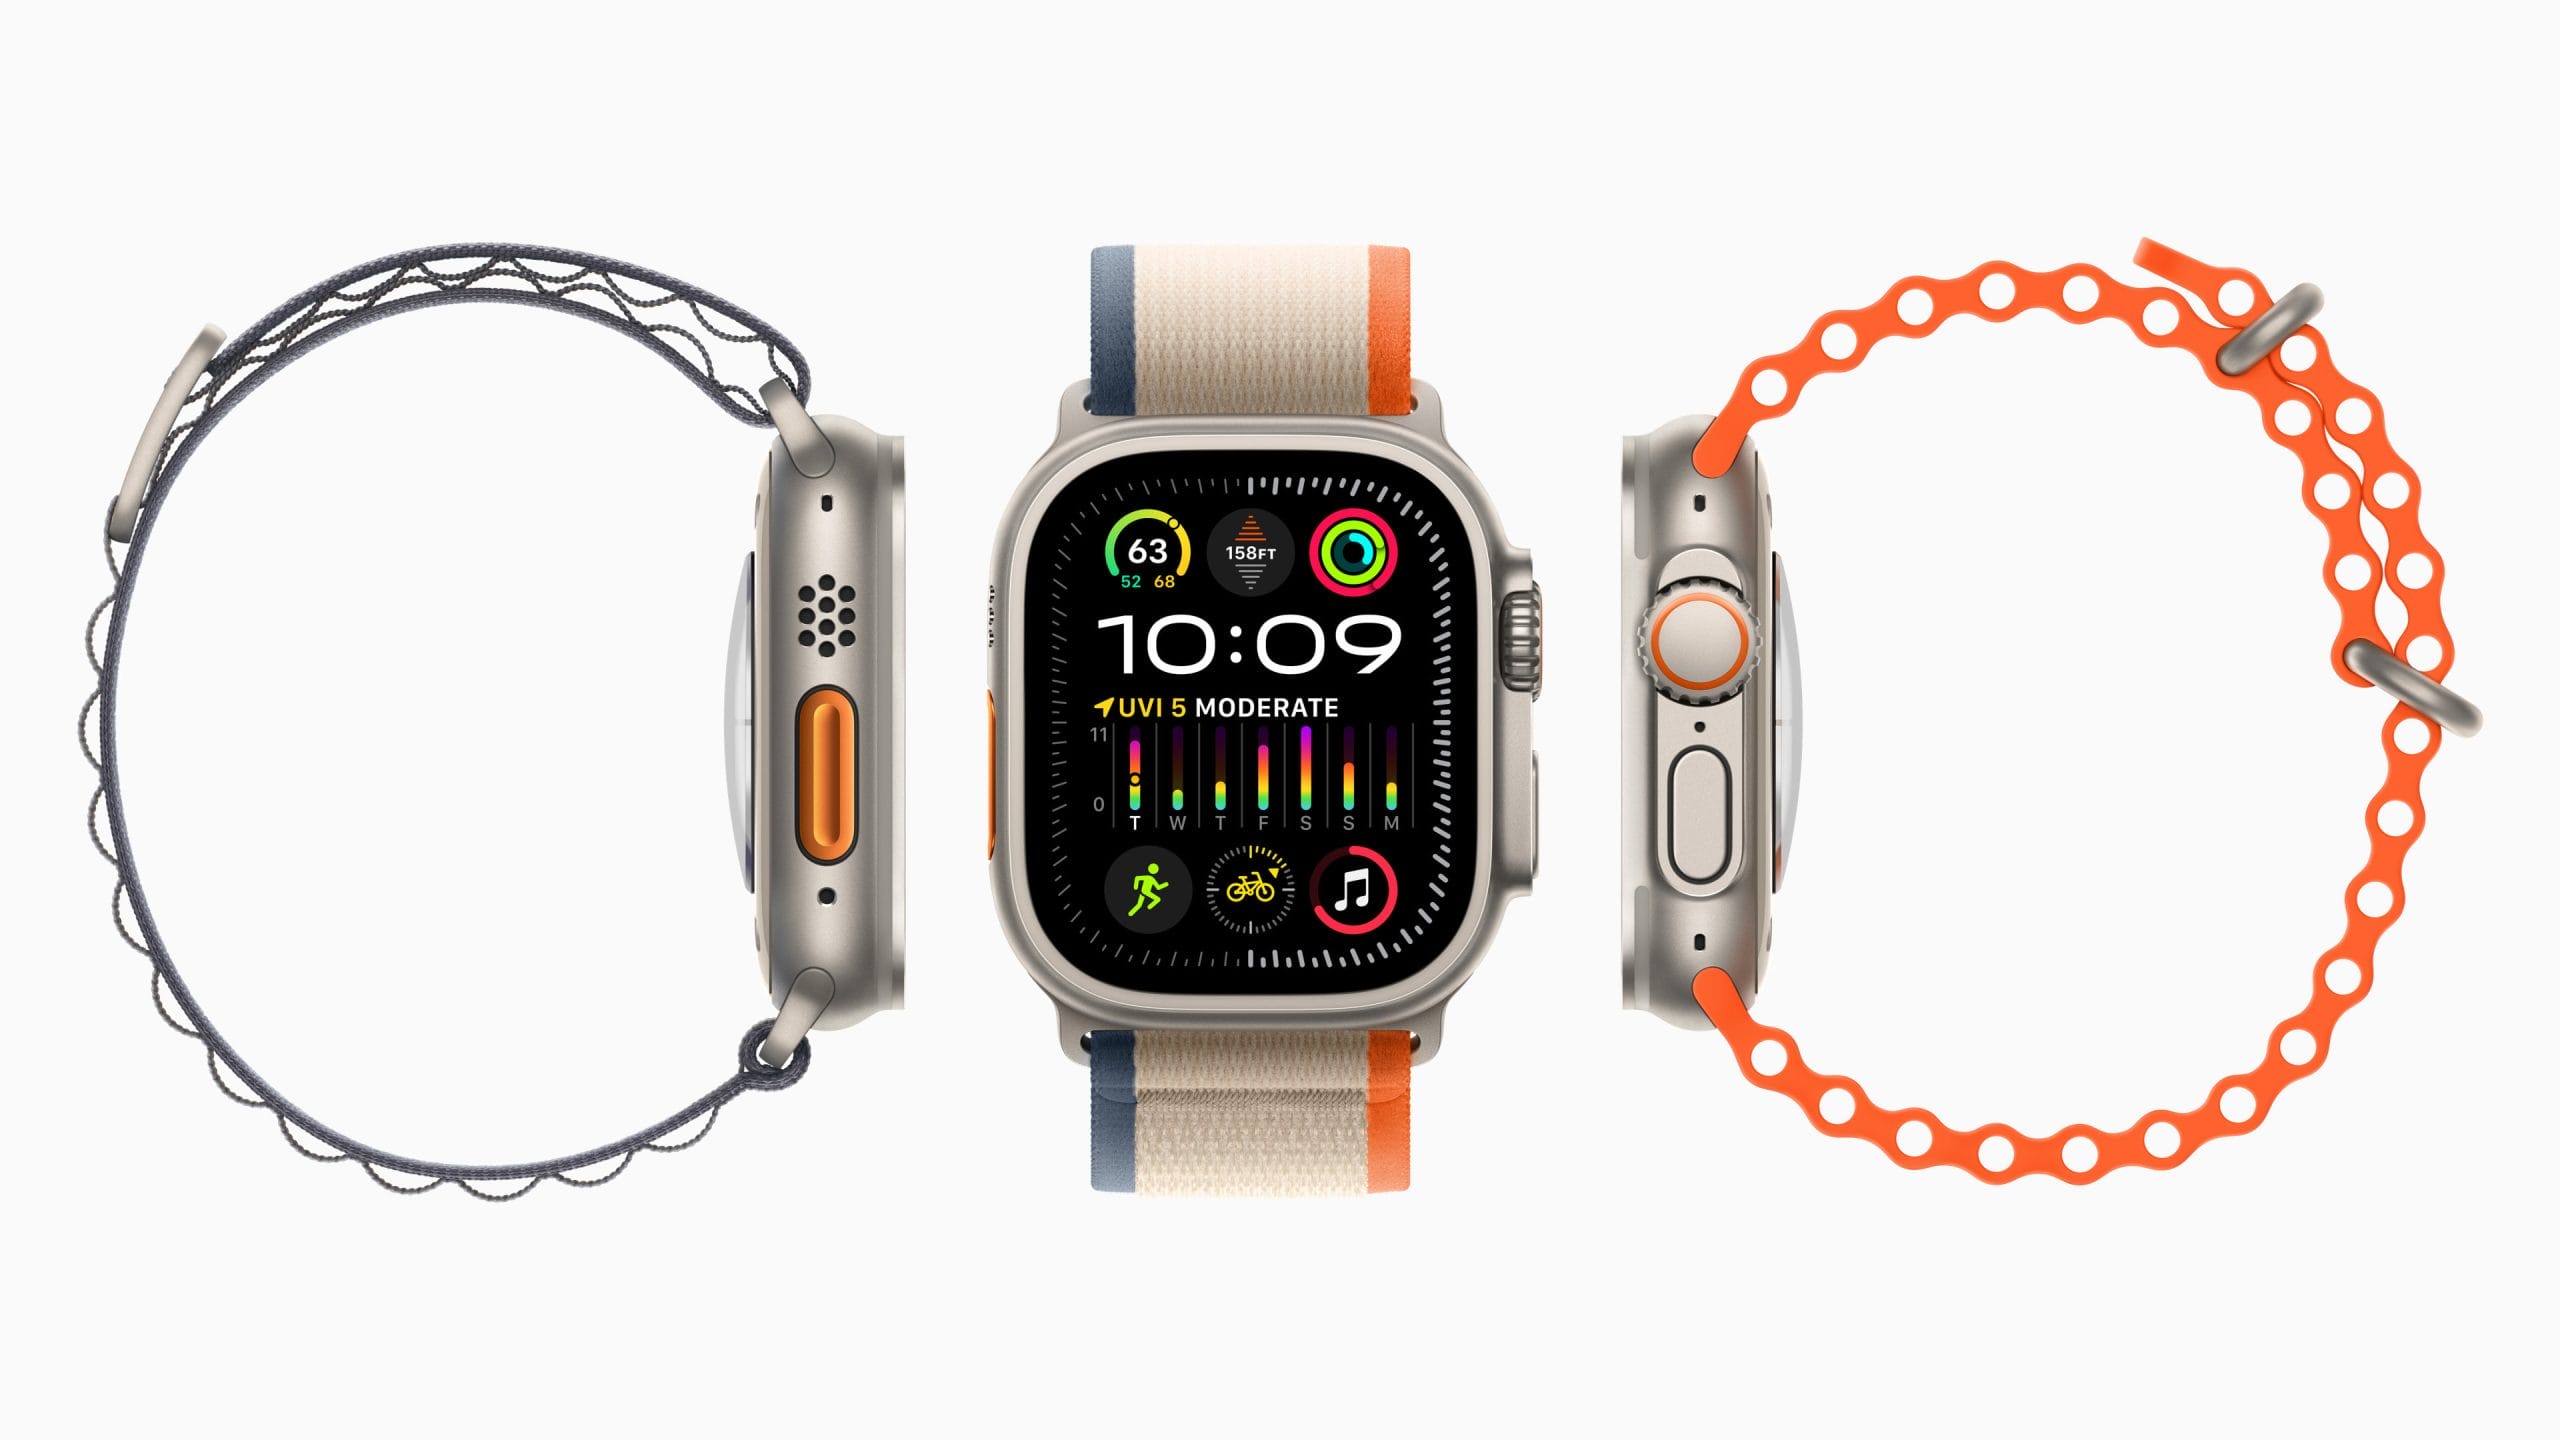 Buy Ora Major Watch | 40mm, Contemporary design at Amazon.in